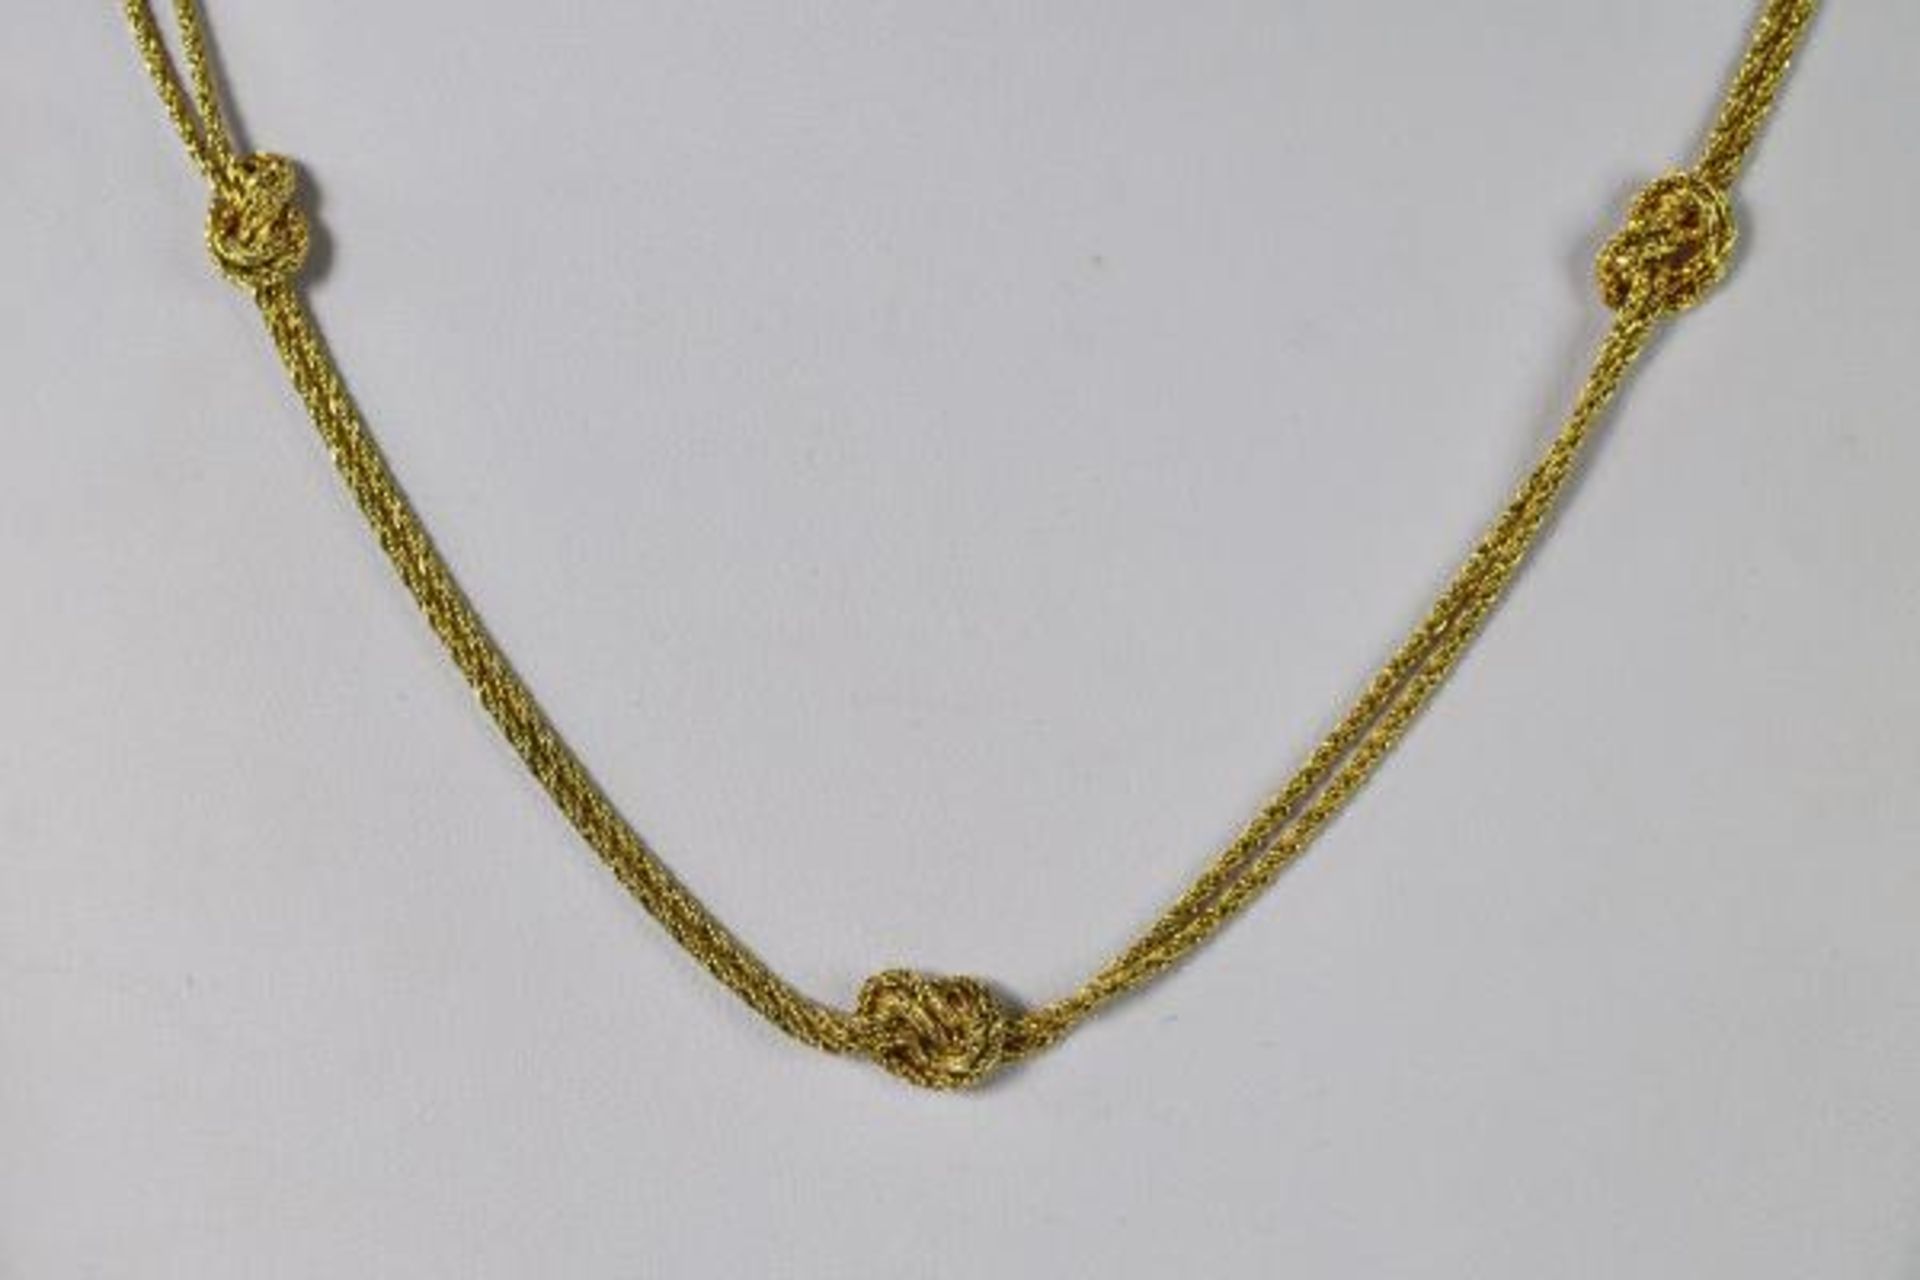 LANGE KETTE aus zwei feinen Kordelsträngen mit Knotenverzierung, Ringverschluß, Gelbgold 14ct, 29,9g - Bild 2 aus 2